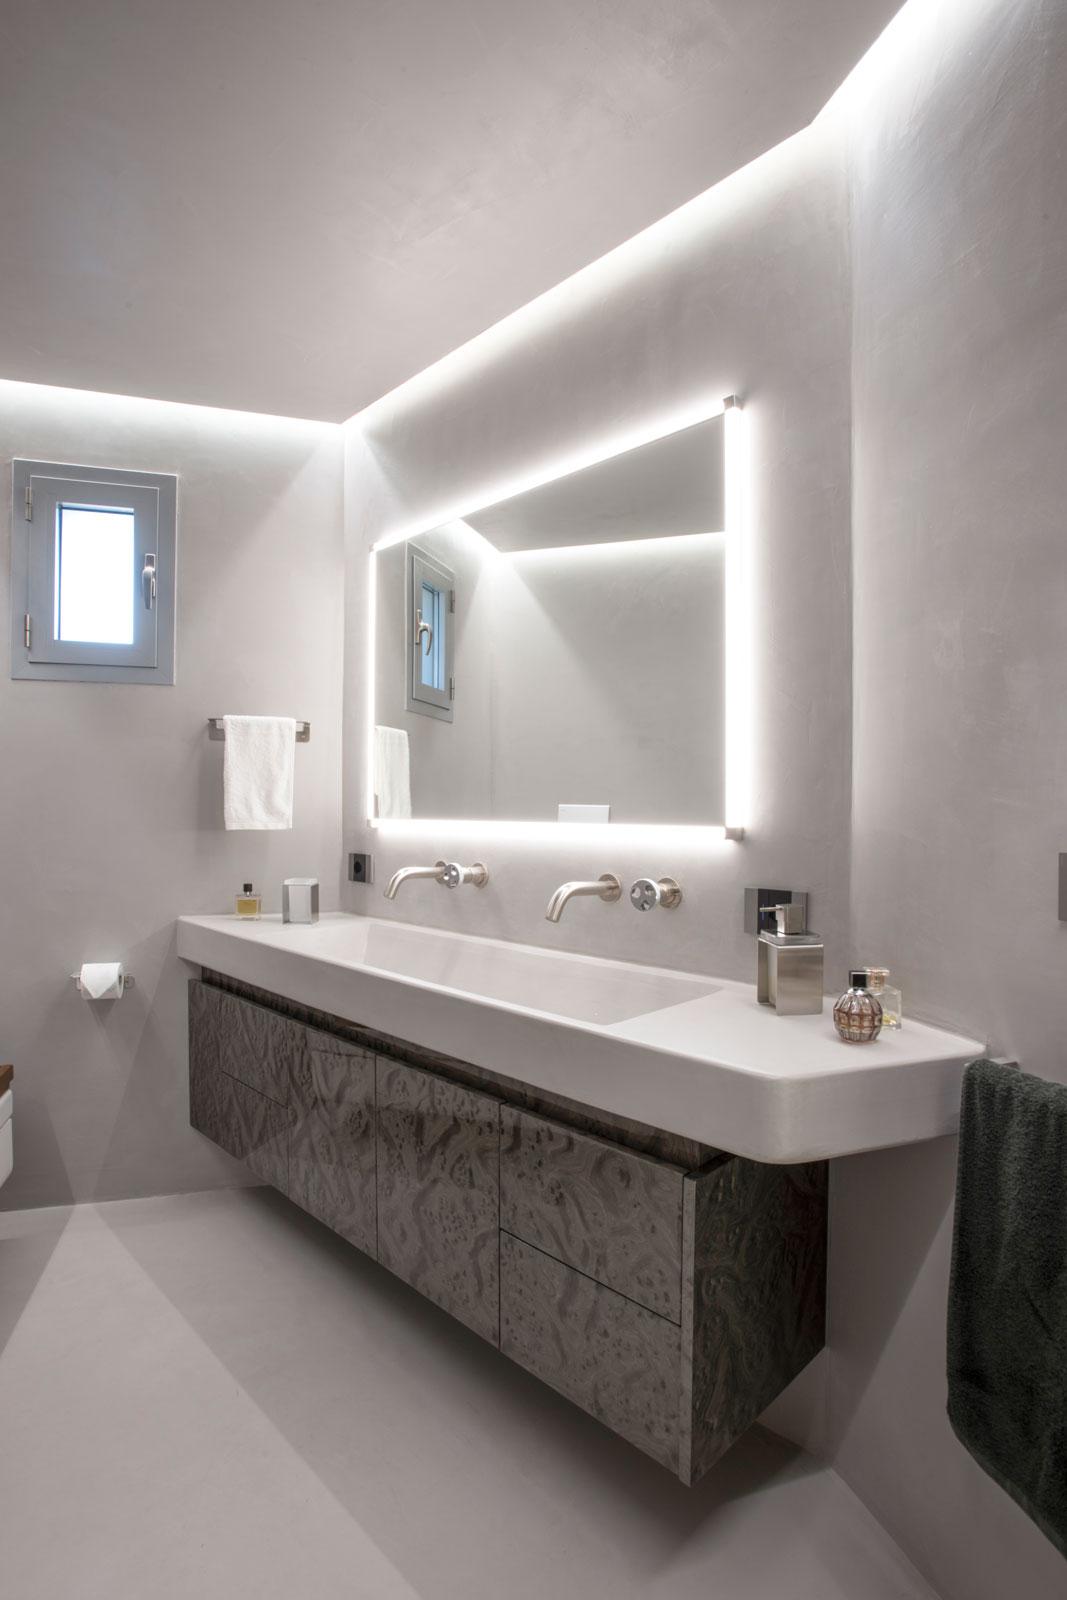 Bagno moderno in resina di cemento, illuminazione perimetrale, lavabo doppio in resina e mobile sospeso in radica grigio